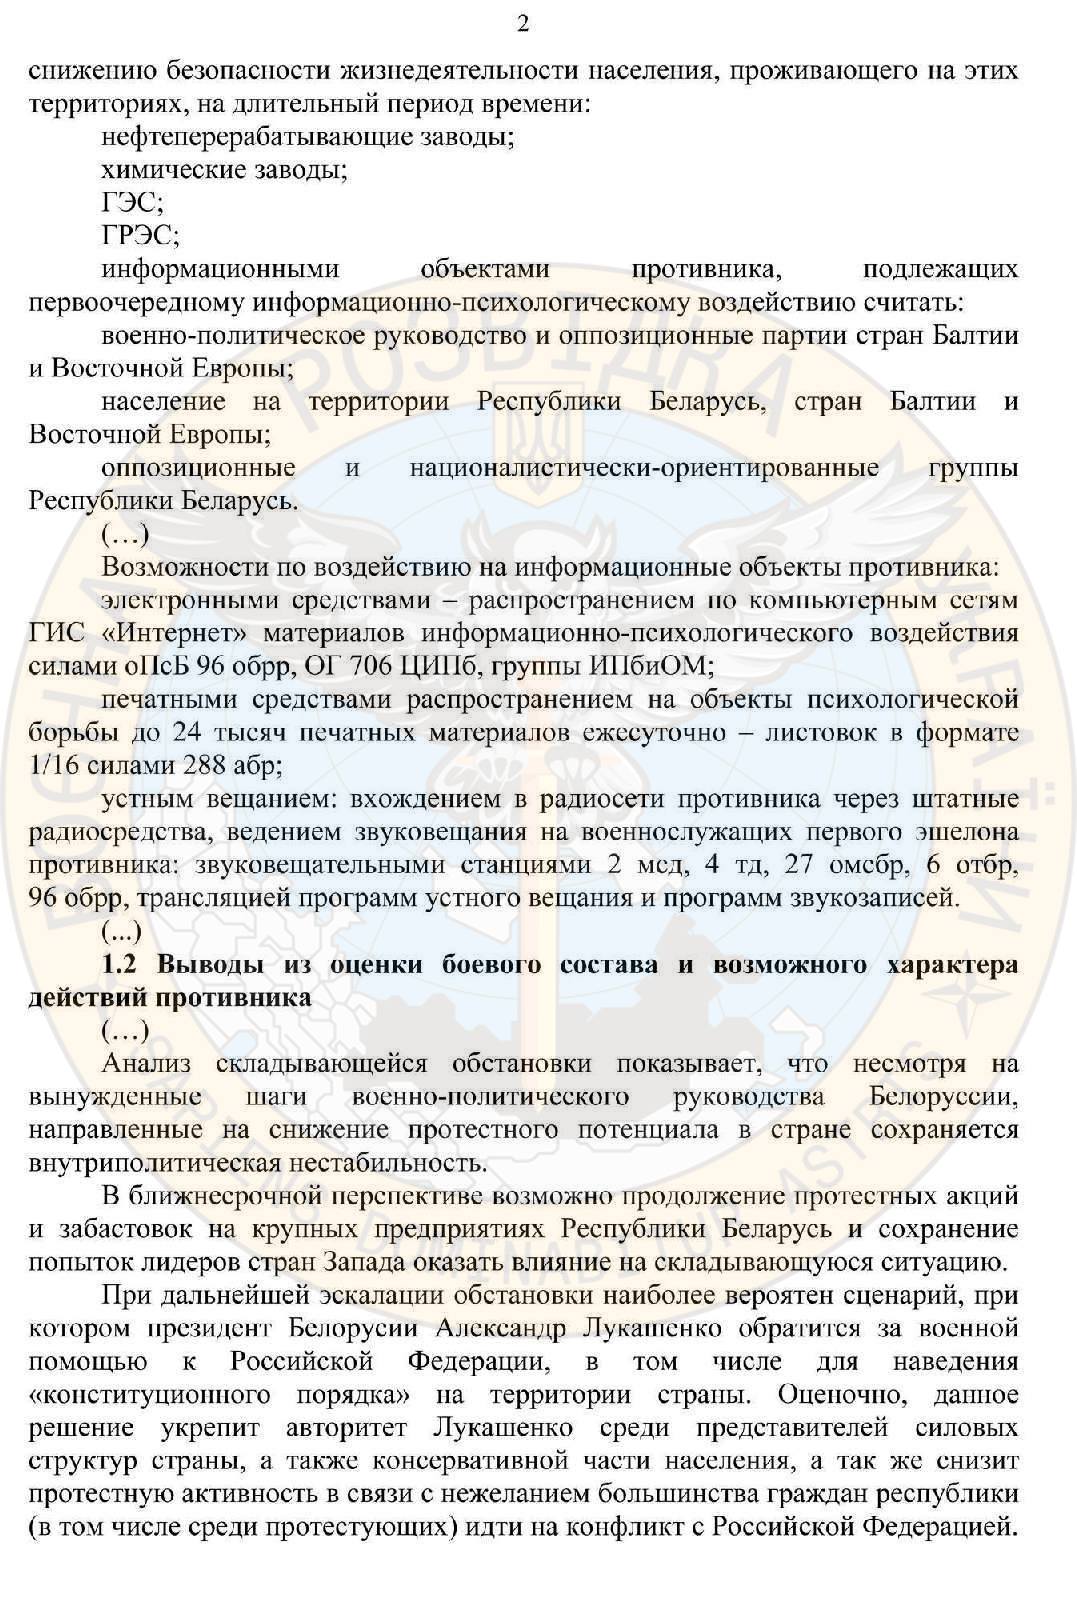 план рф захоплення білорусі, сторінка 2